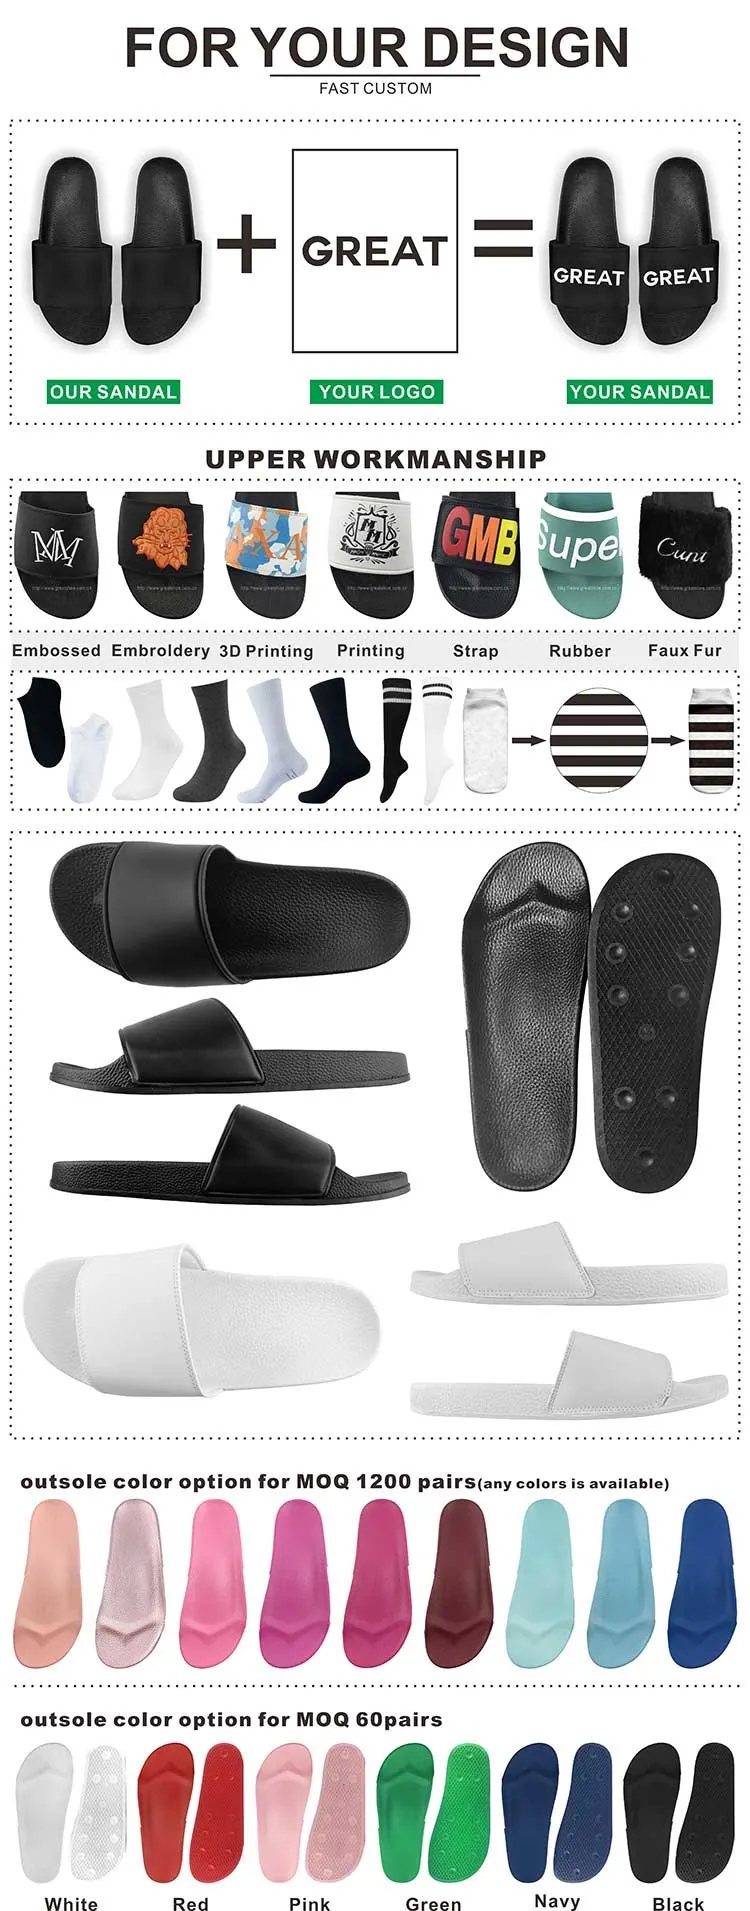 Greatshhoe Custom Printed Sandals Black Slide Slipper for Men, Leather Slide Sandal